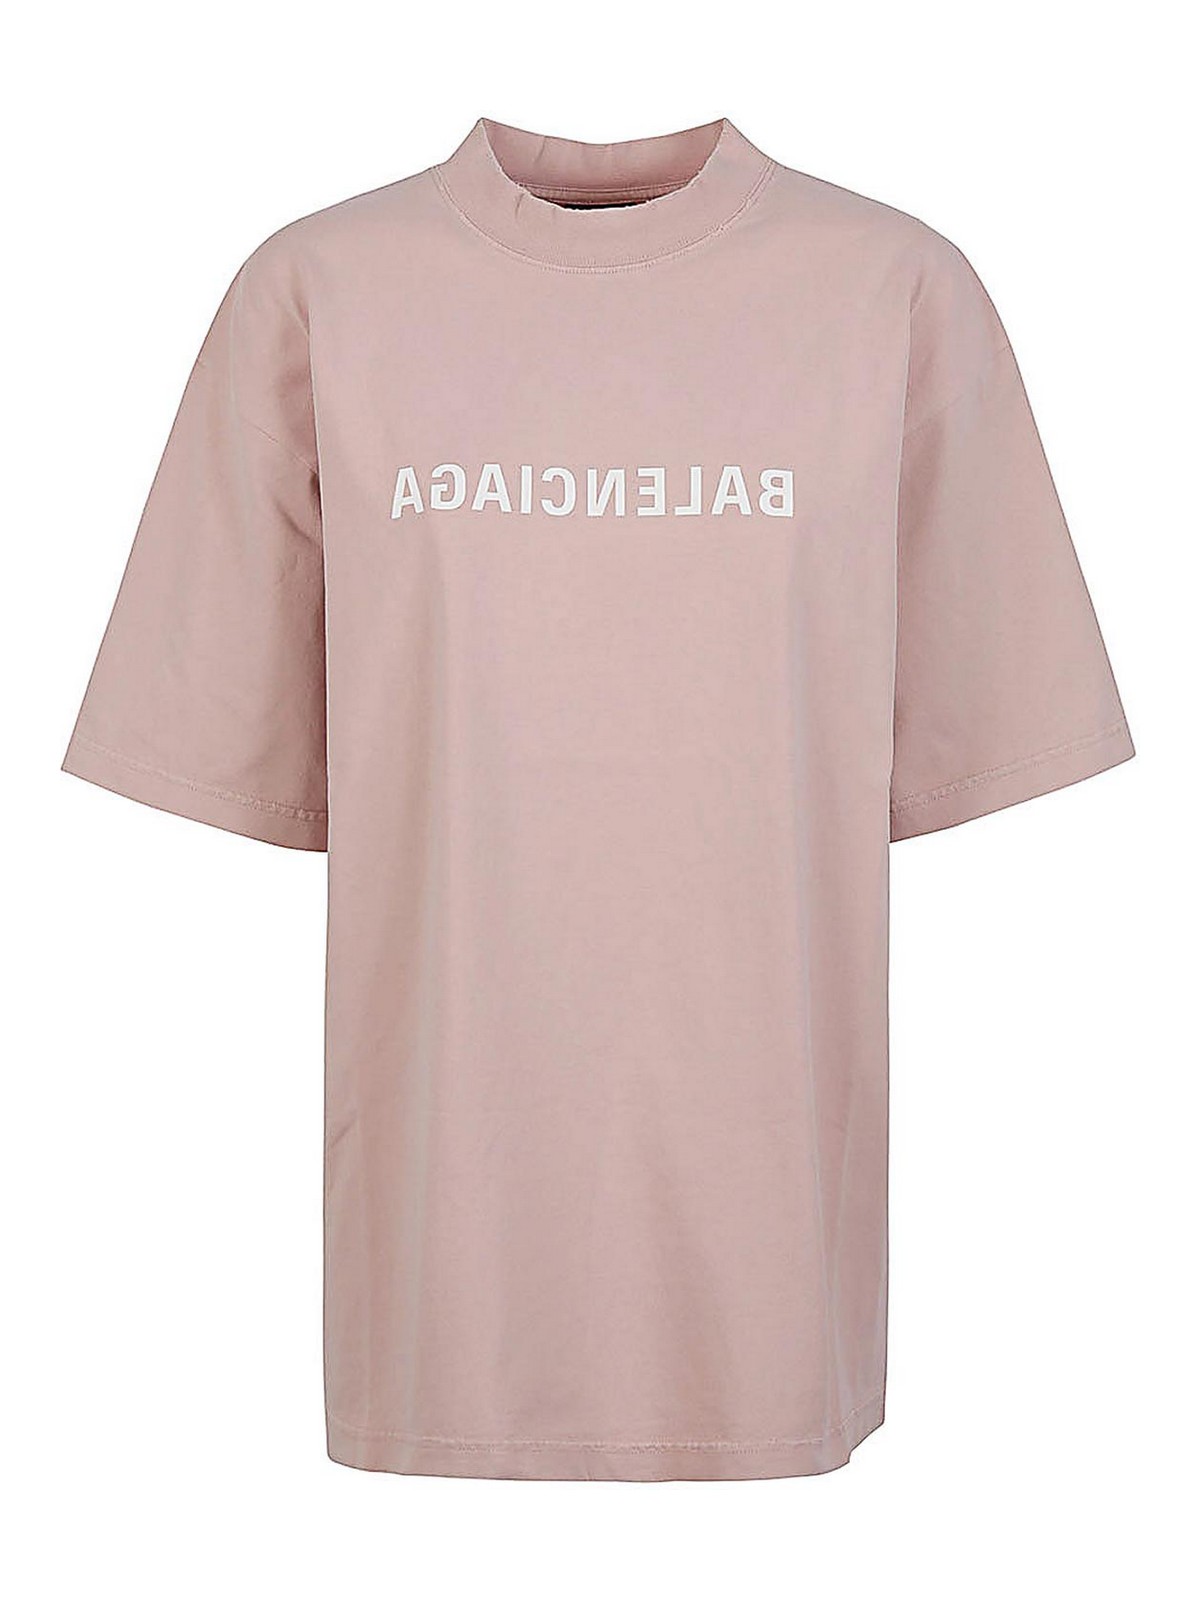 Balenciaga Camiseta - Color Carne Y Neutral